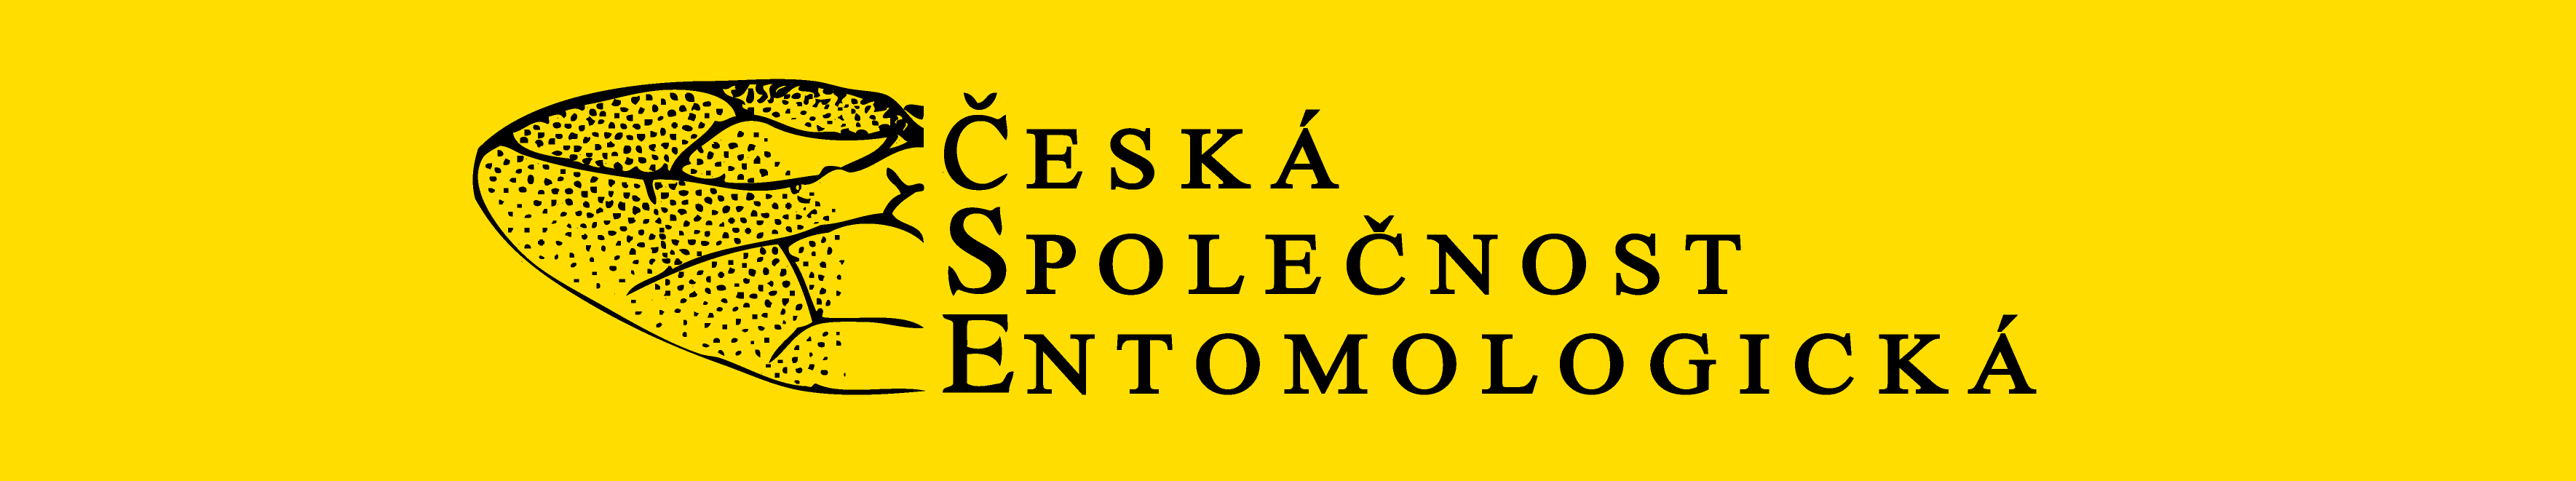 Česká společnost entomologická